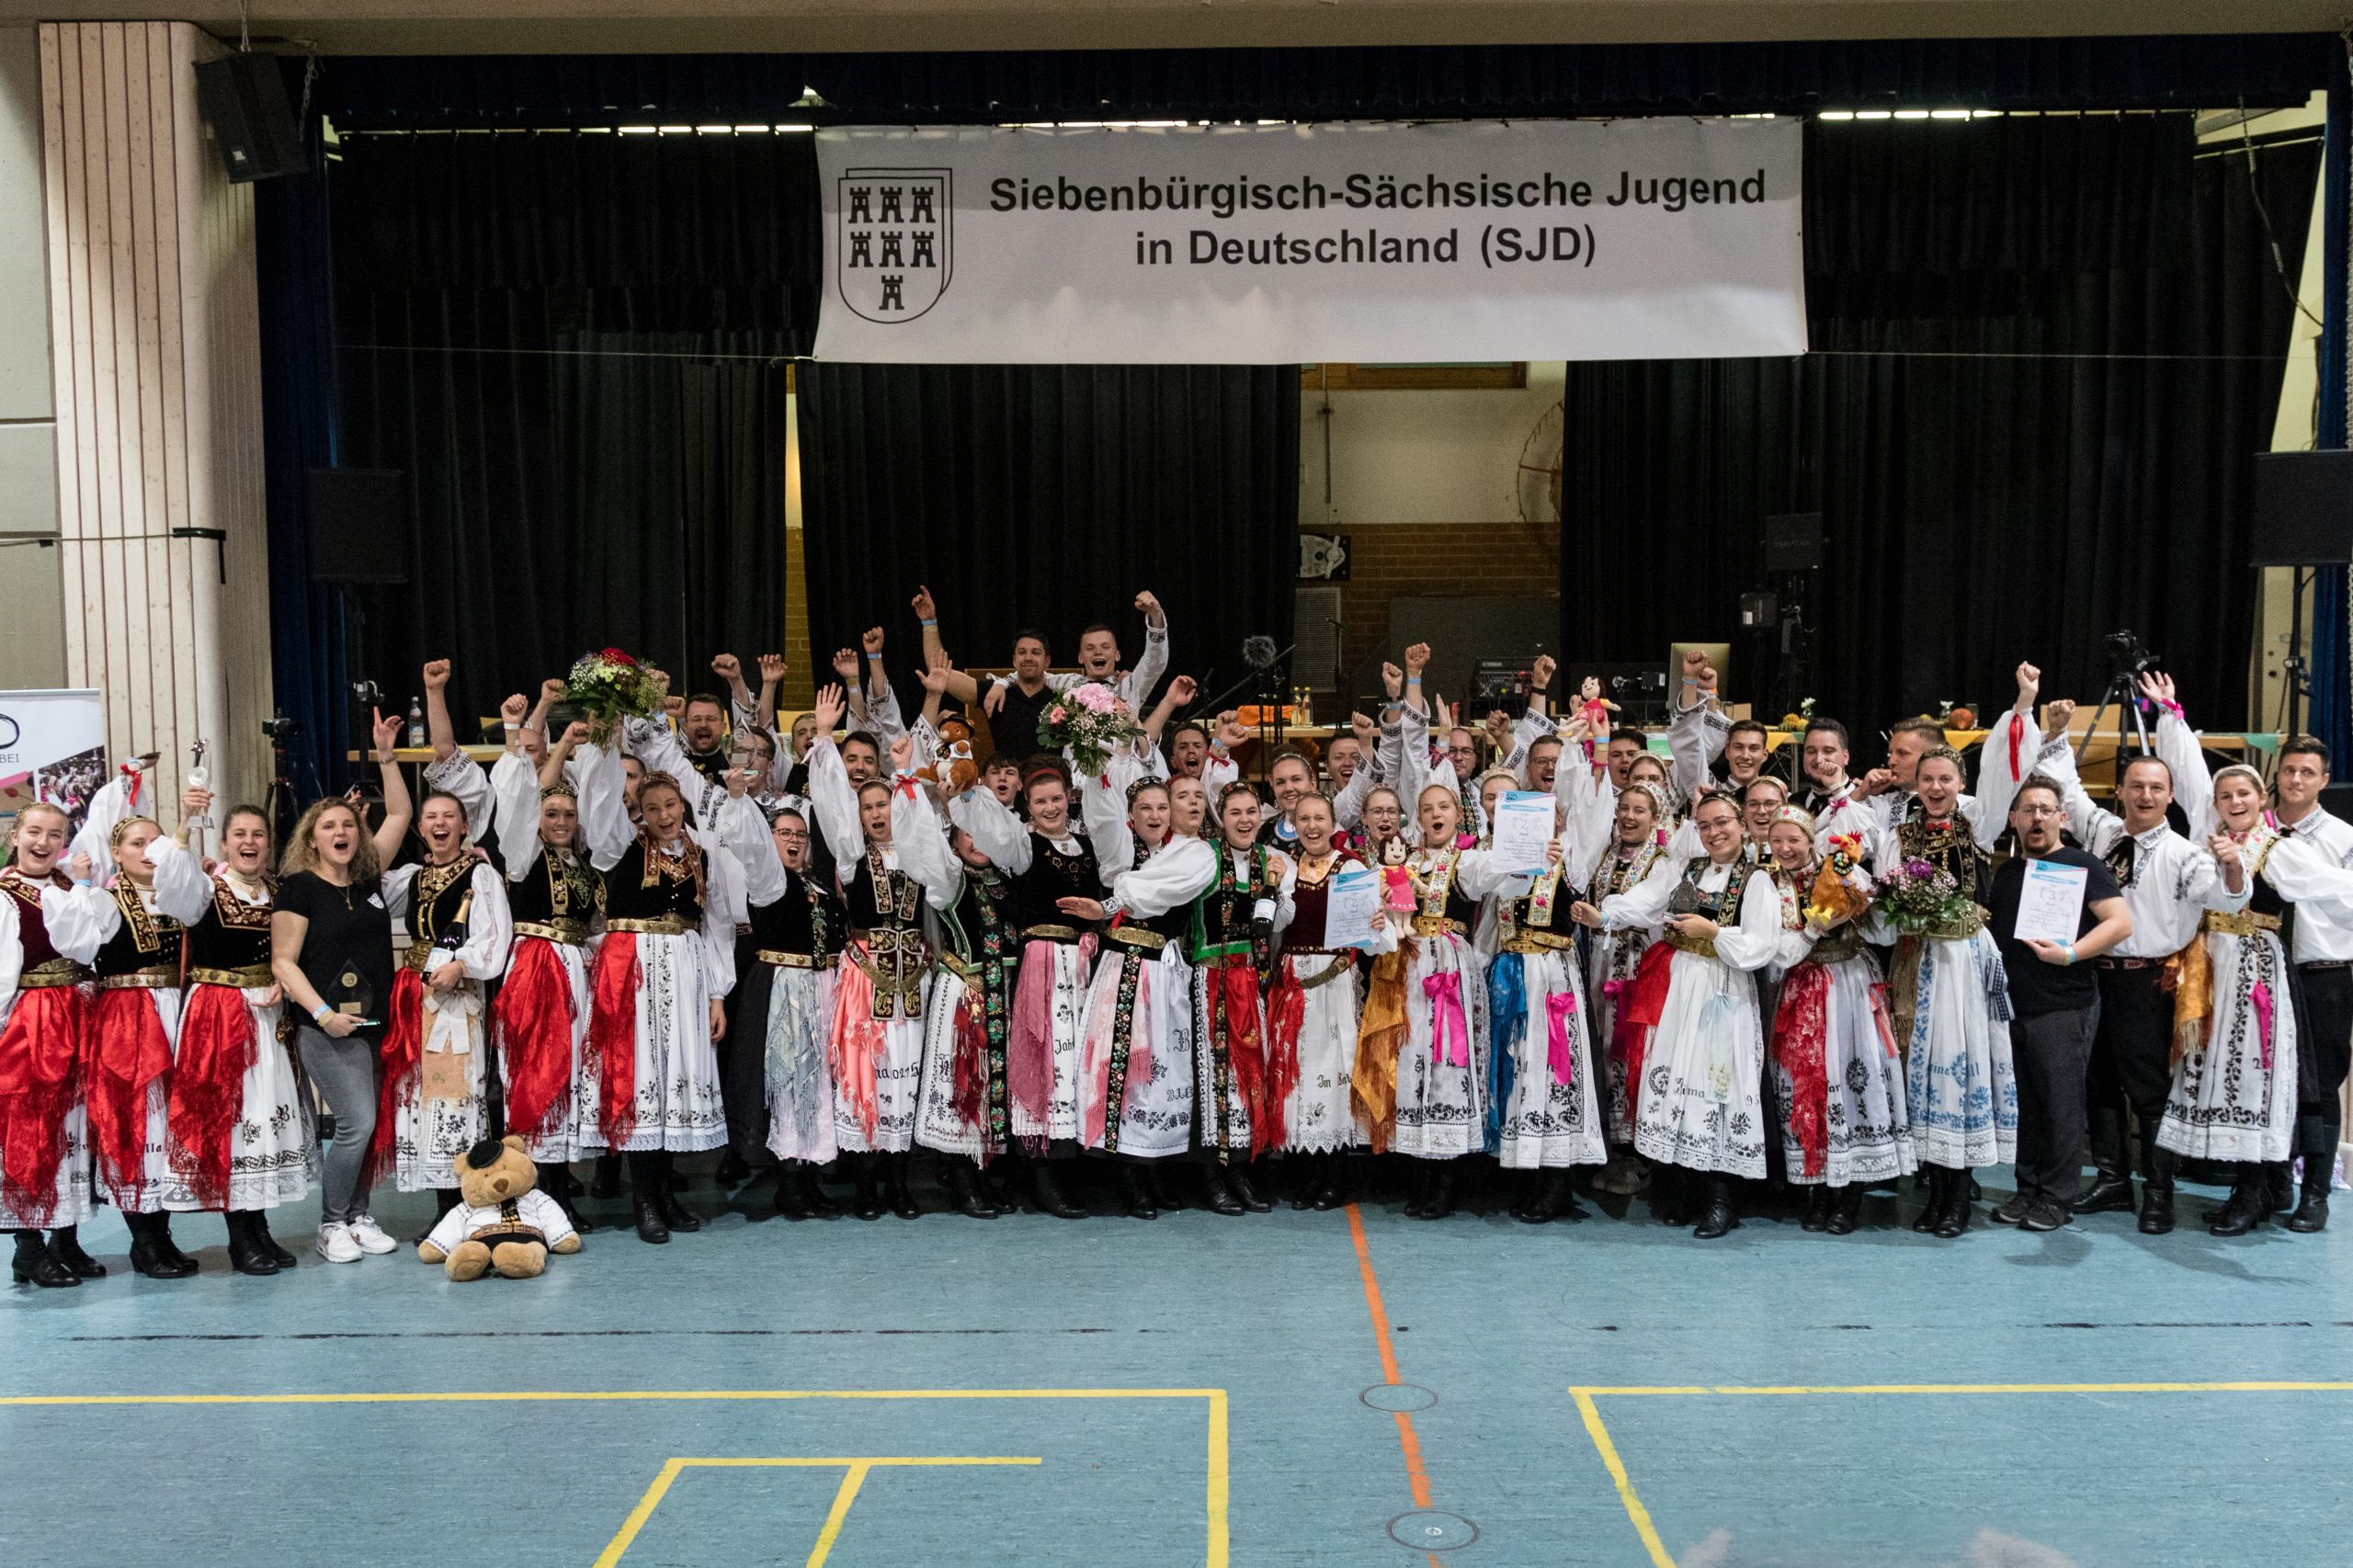 Sieger Tanzgruppen von links: Siebenbürgisch-Sächsische Jugendtanzgruppe Biberach, Siebenbürgische Tanzgruppe Augsburg, Siebenbürgisch-Sächsische Jugendtanzgruppe Heidenheim, Siebenbürgische Jugendtanzgruppe Heilbronn.